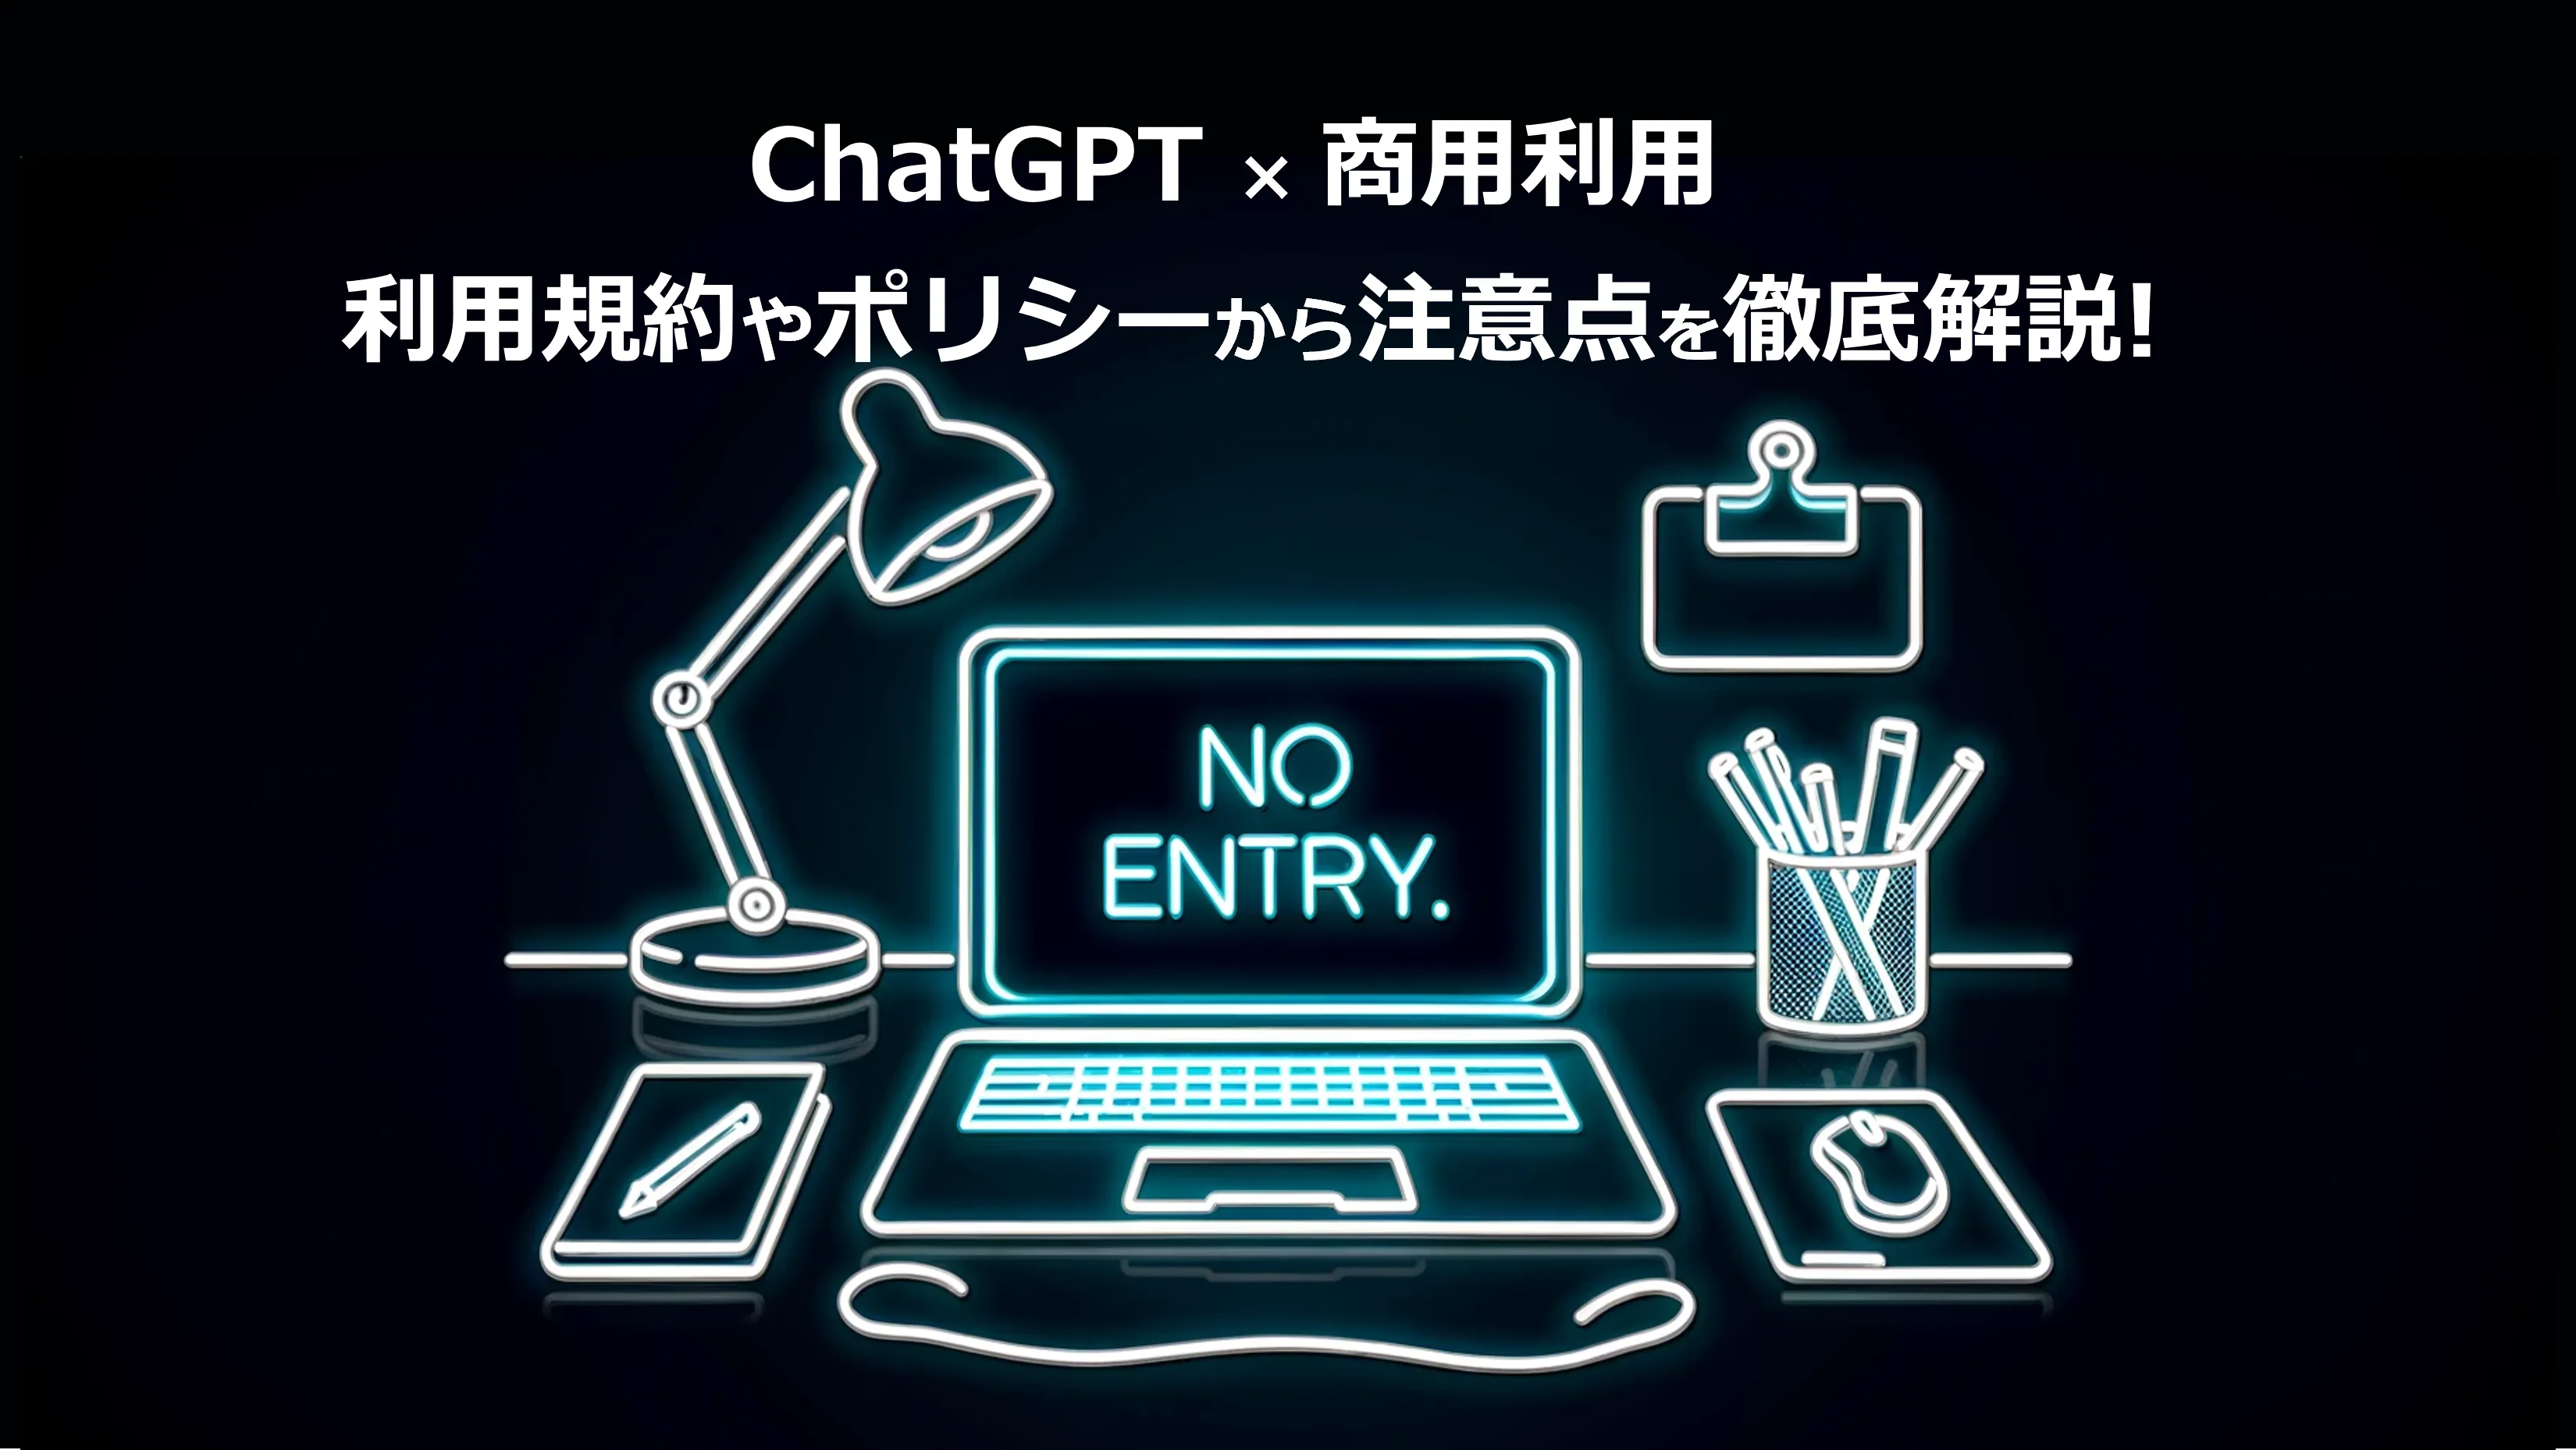 必見!! ChatGPT×商用利用、 利用規約やポリシーから注意点を徹底解説!